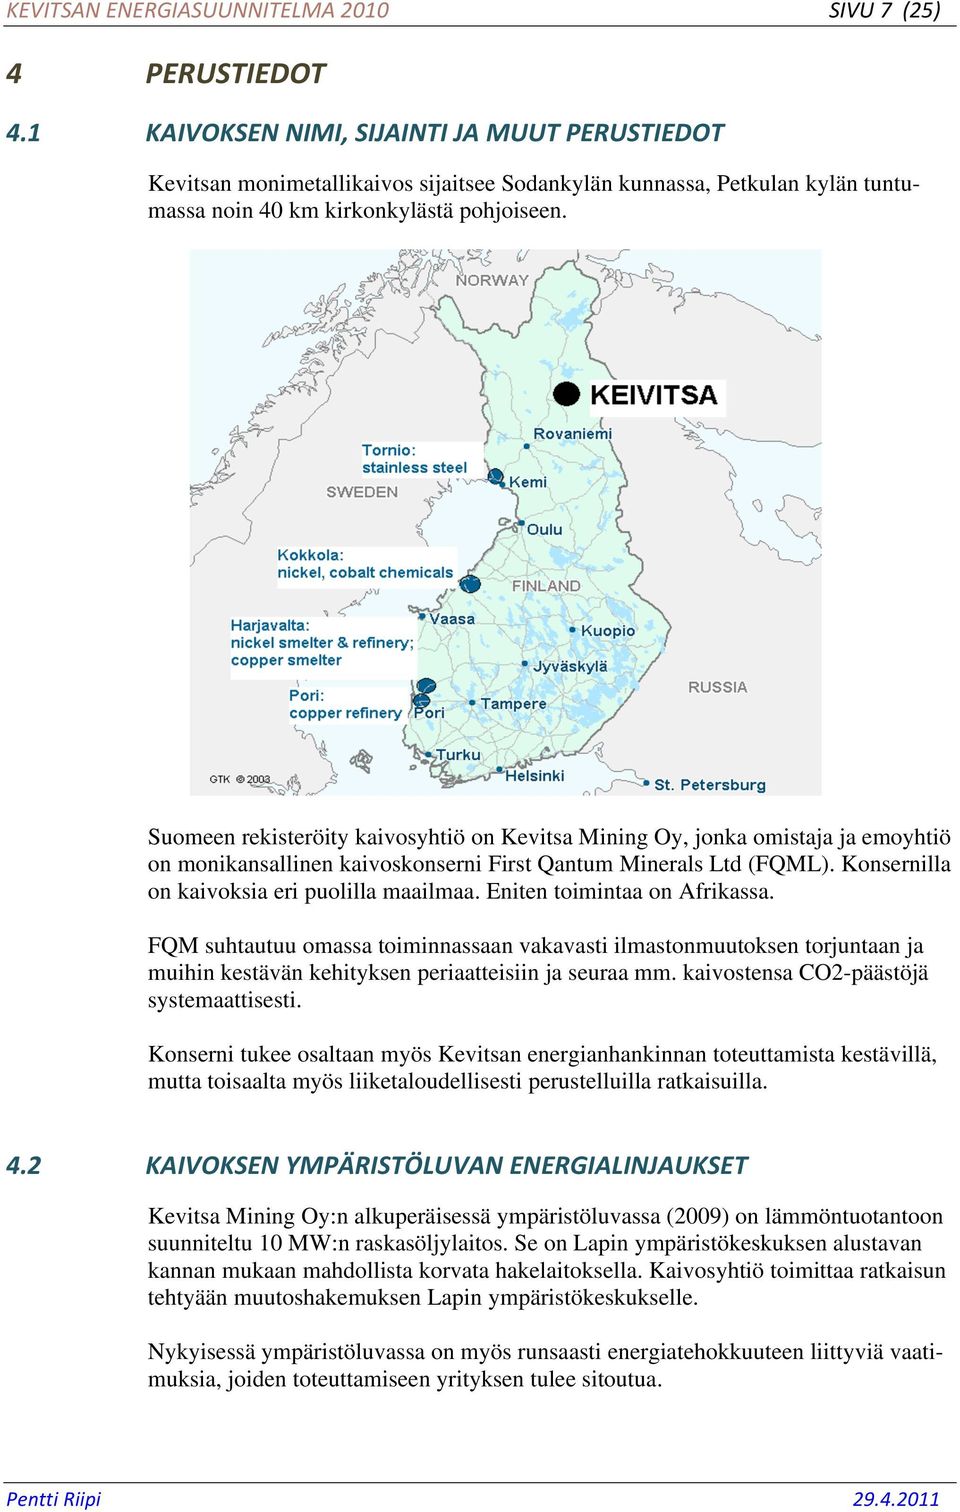 Suomeen rekisteröity kaivosyhtiö on Kevitsa Mining Oy, jonka omistaja ja emoyhtiö on monikansallinen kaivoskonserni First Qantum Minerals Ltd (FQML). Konsernilla on kaivoksia eri puolilla maailmaa.